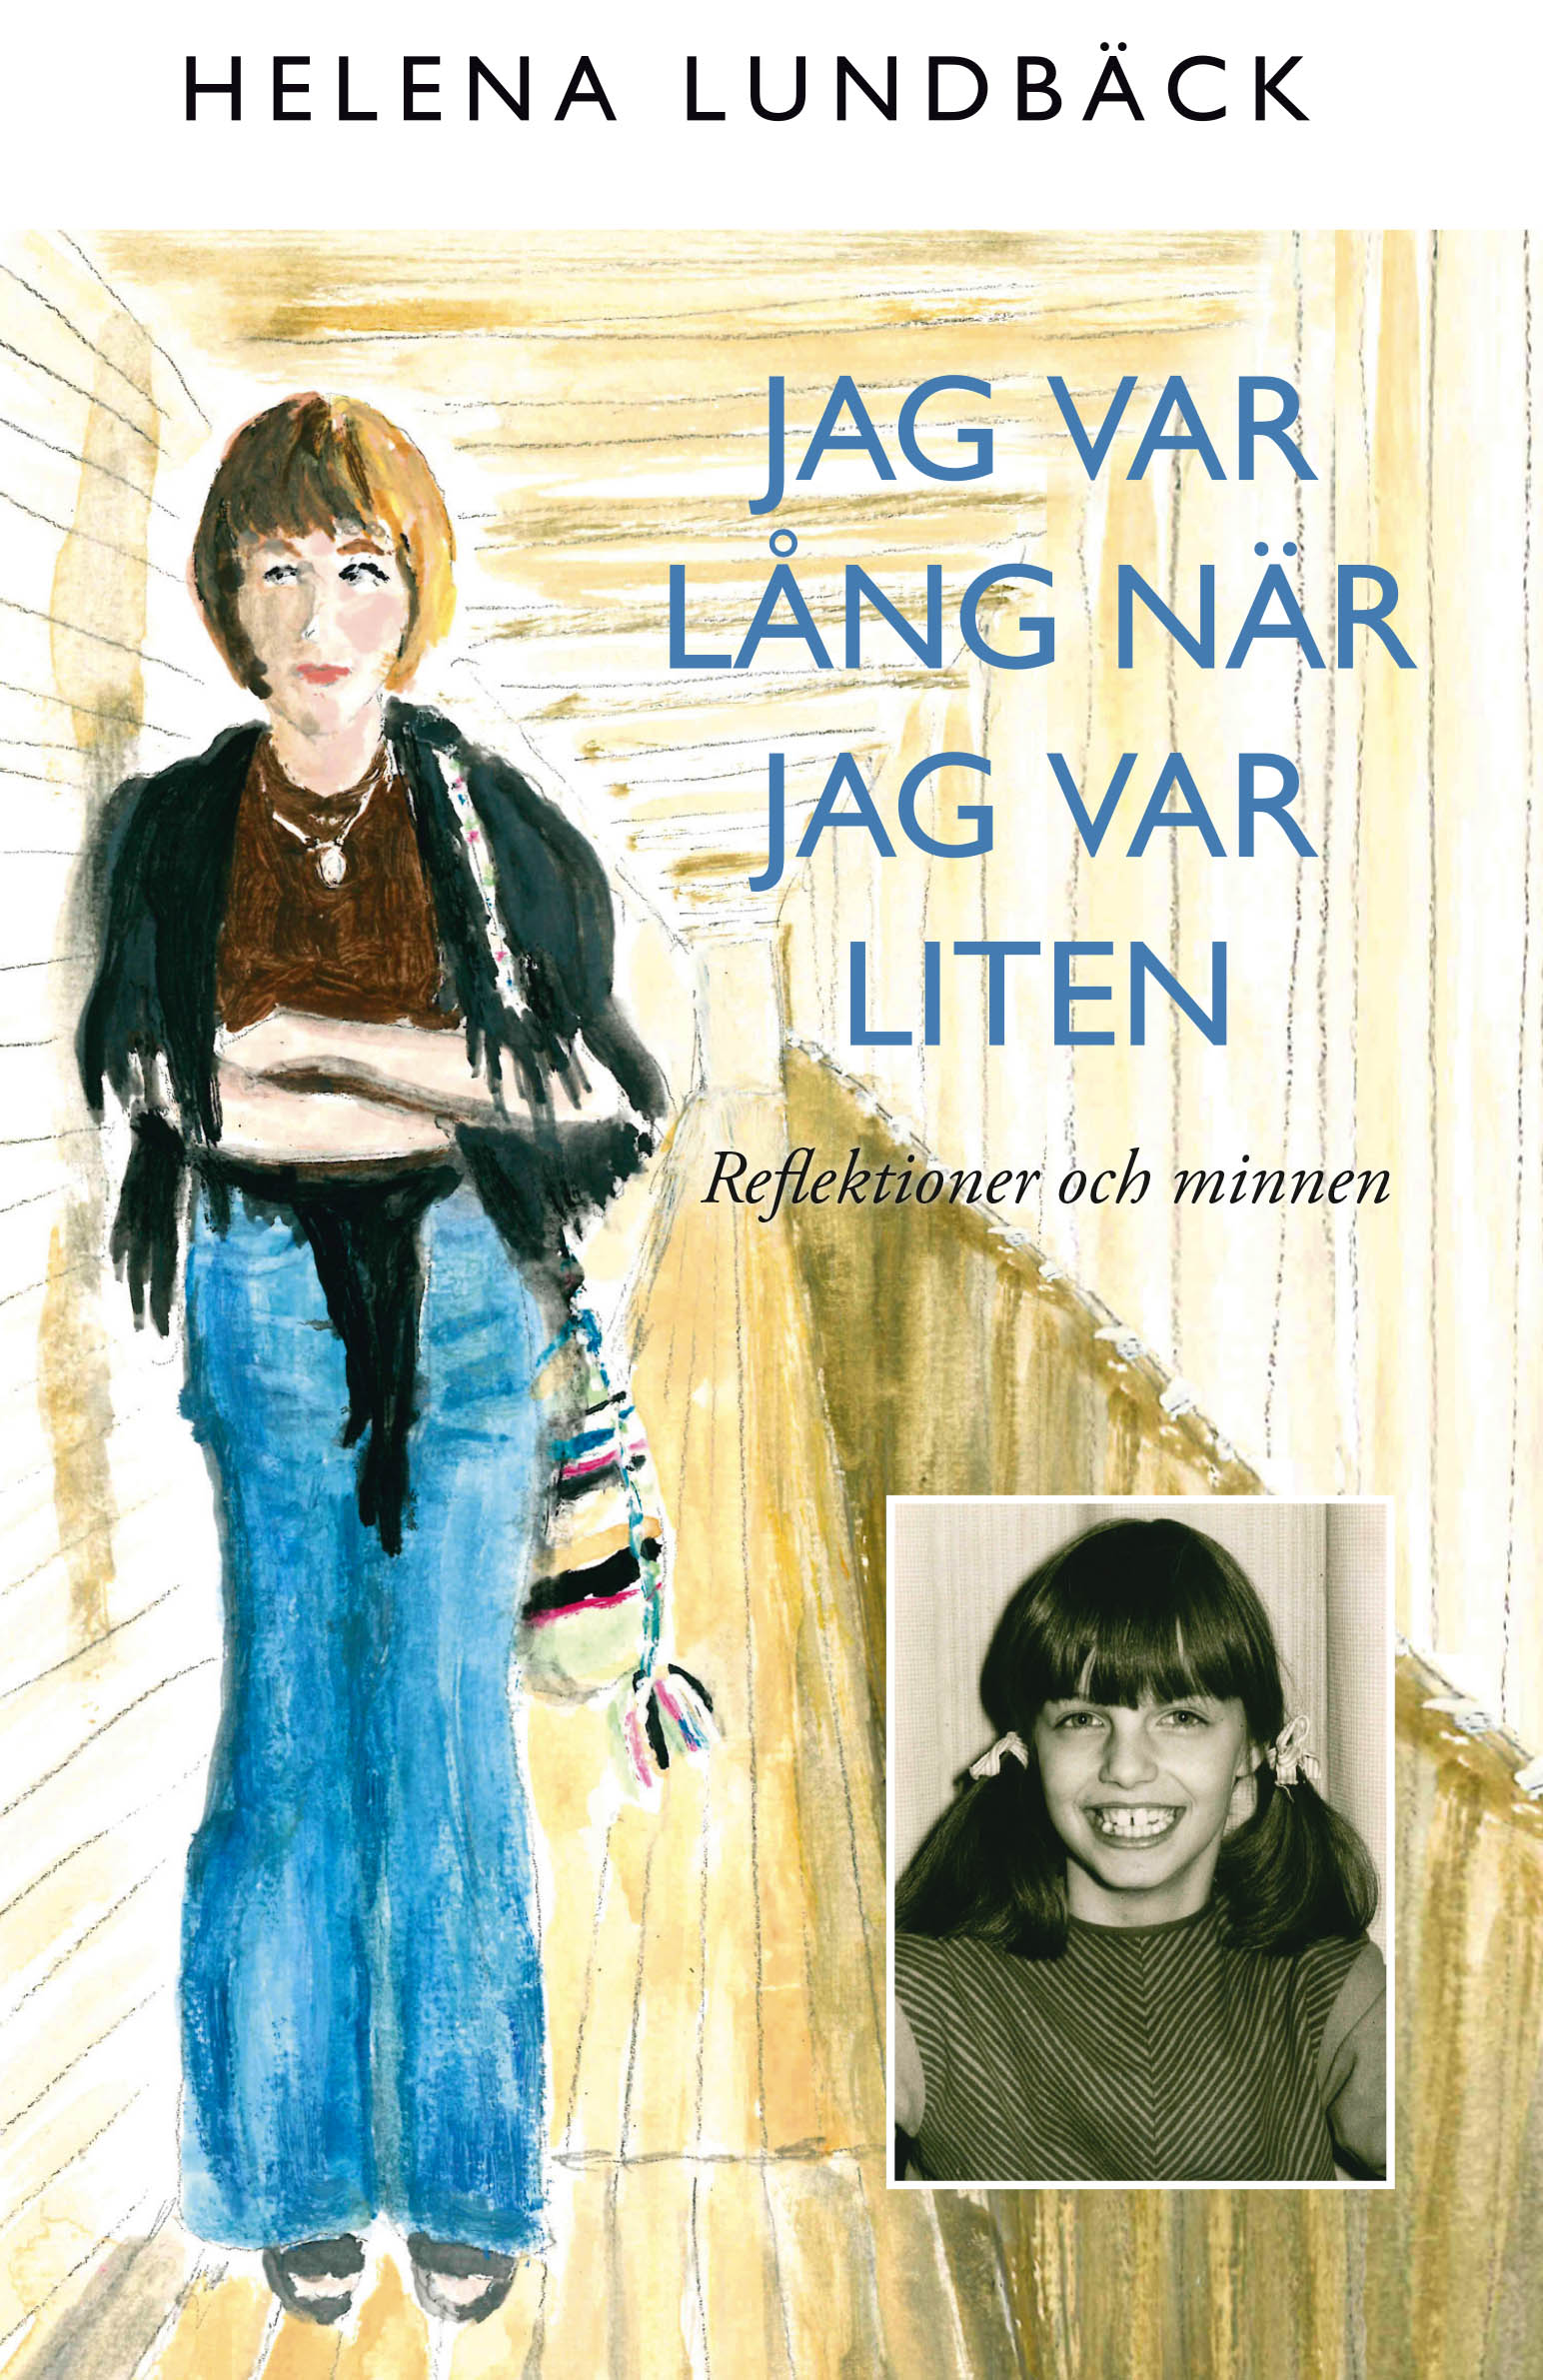 I SVT och Arbetarbladet berättar Helena Lundbäck om författarskapet och cancern